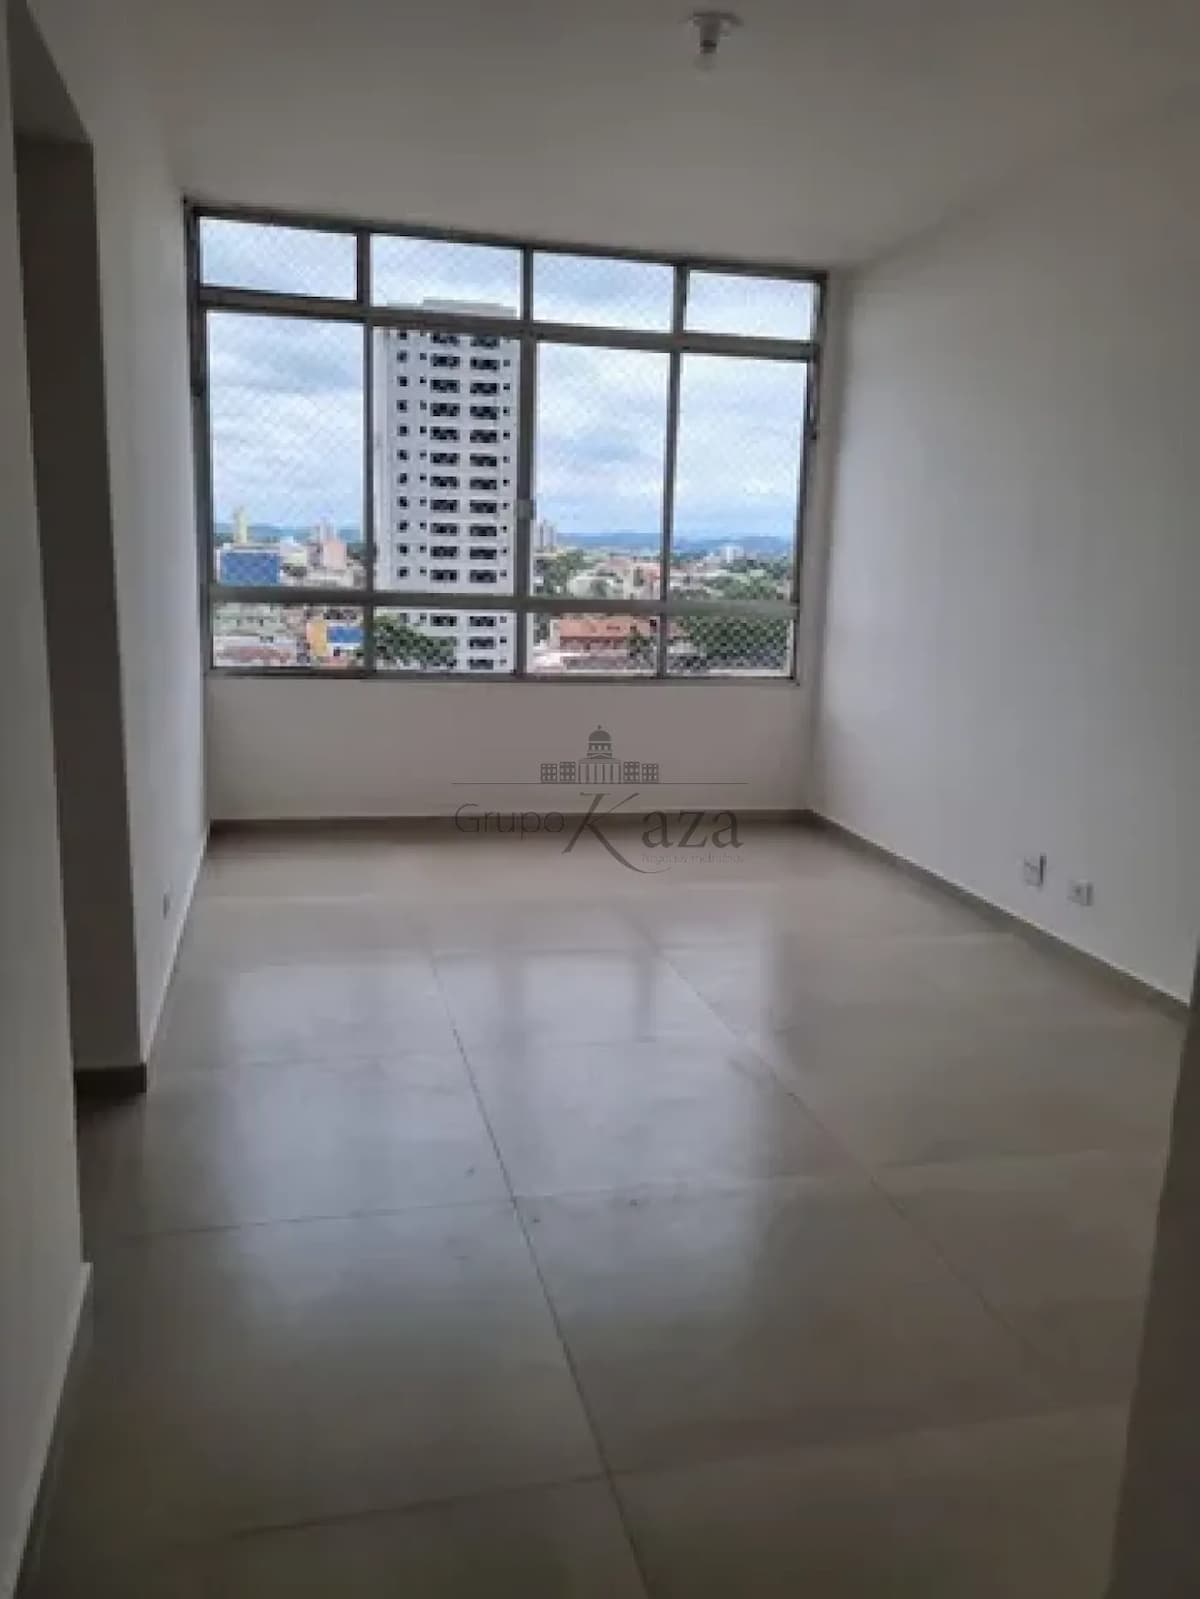 Foto 1 de Apartamento Padrão em Monte Castelo, São José dos Campos - imagem 1